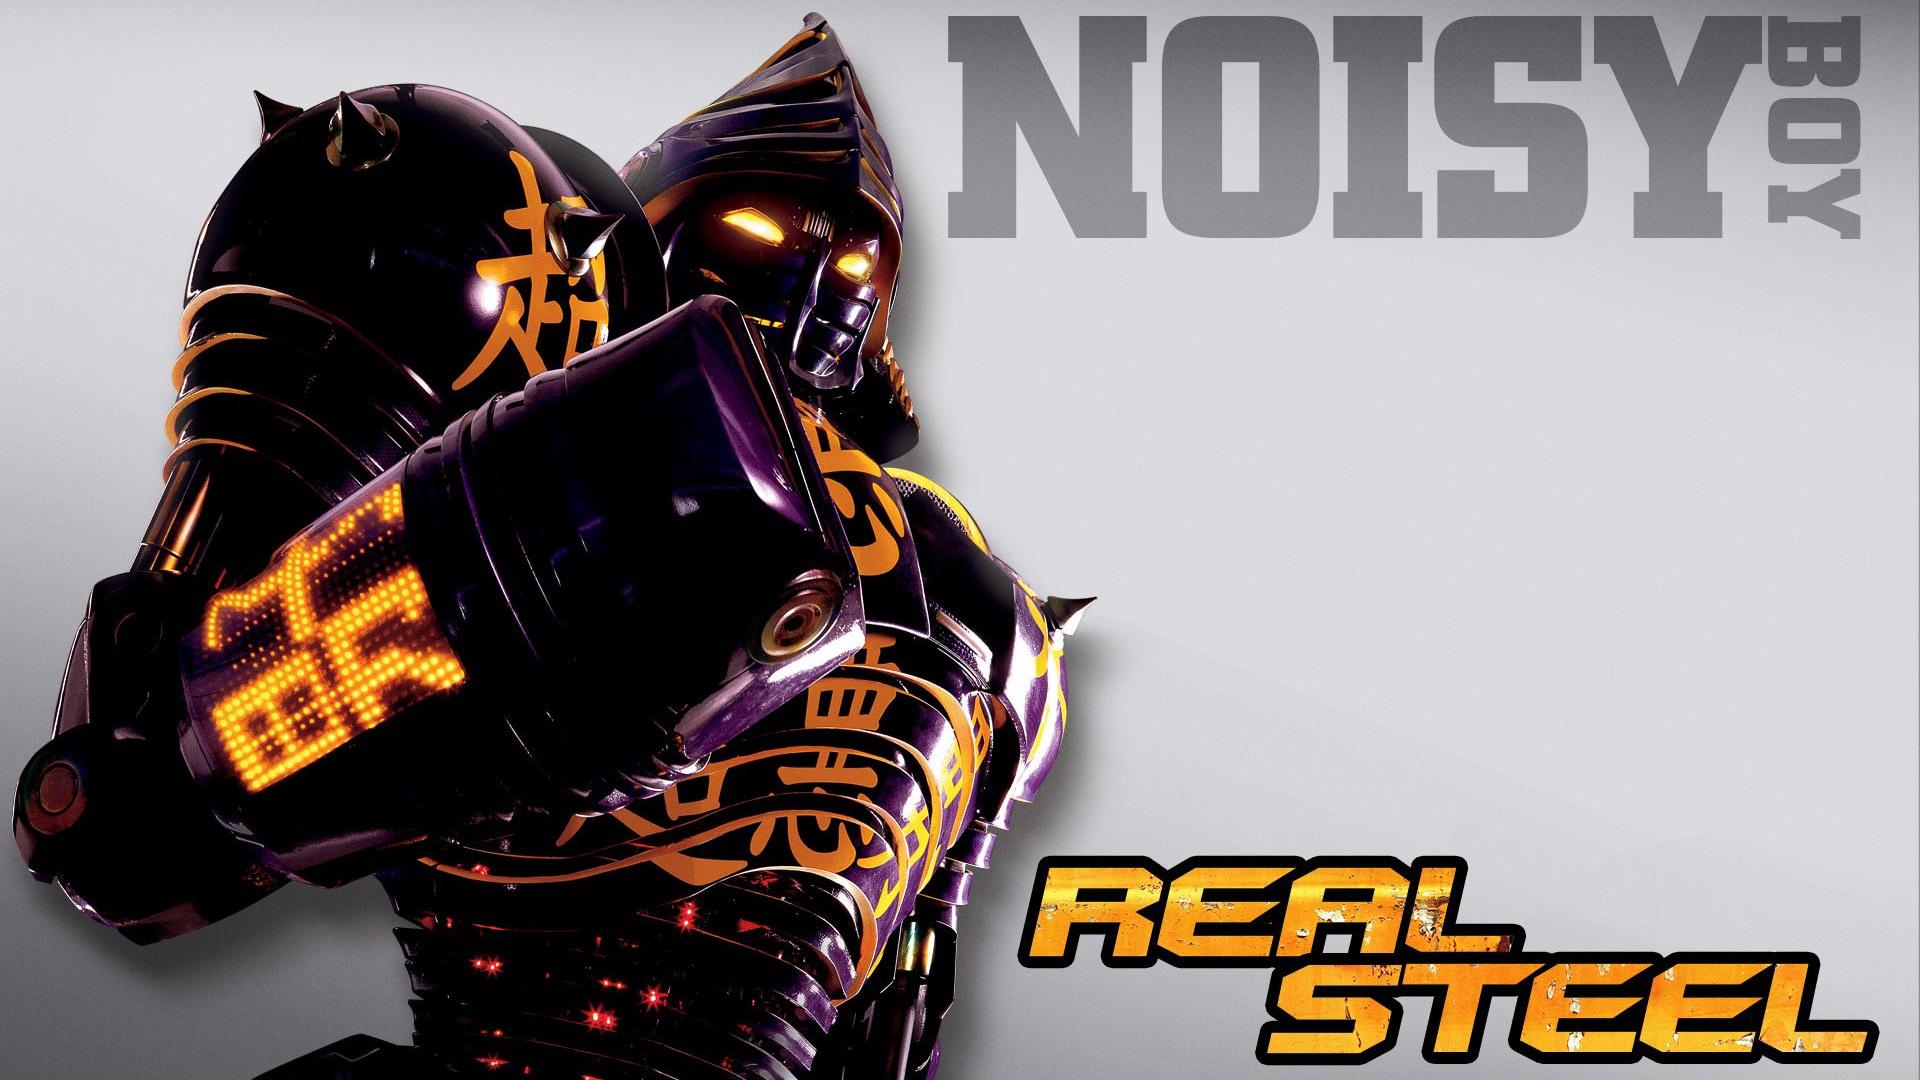 Noisy Boy in Real Steel Wallpaper in jpg format for free download